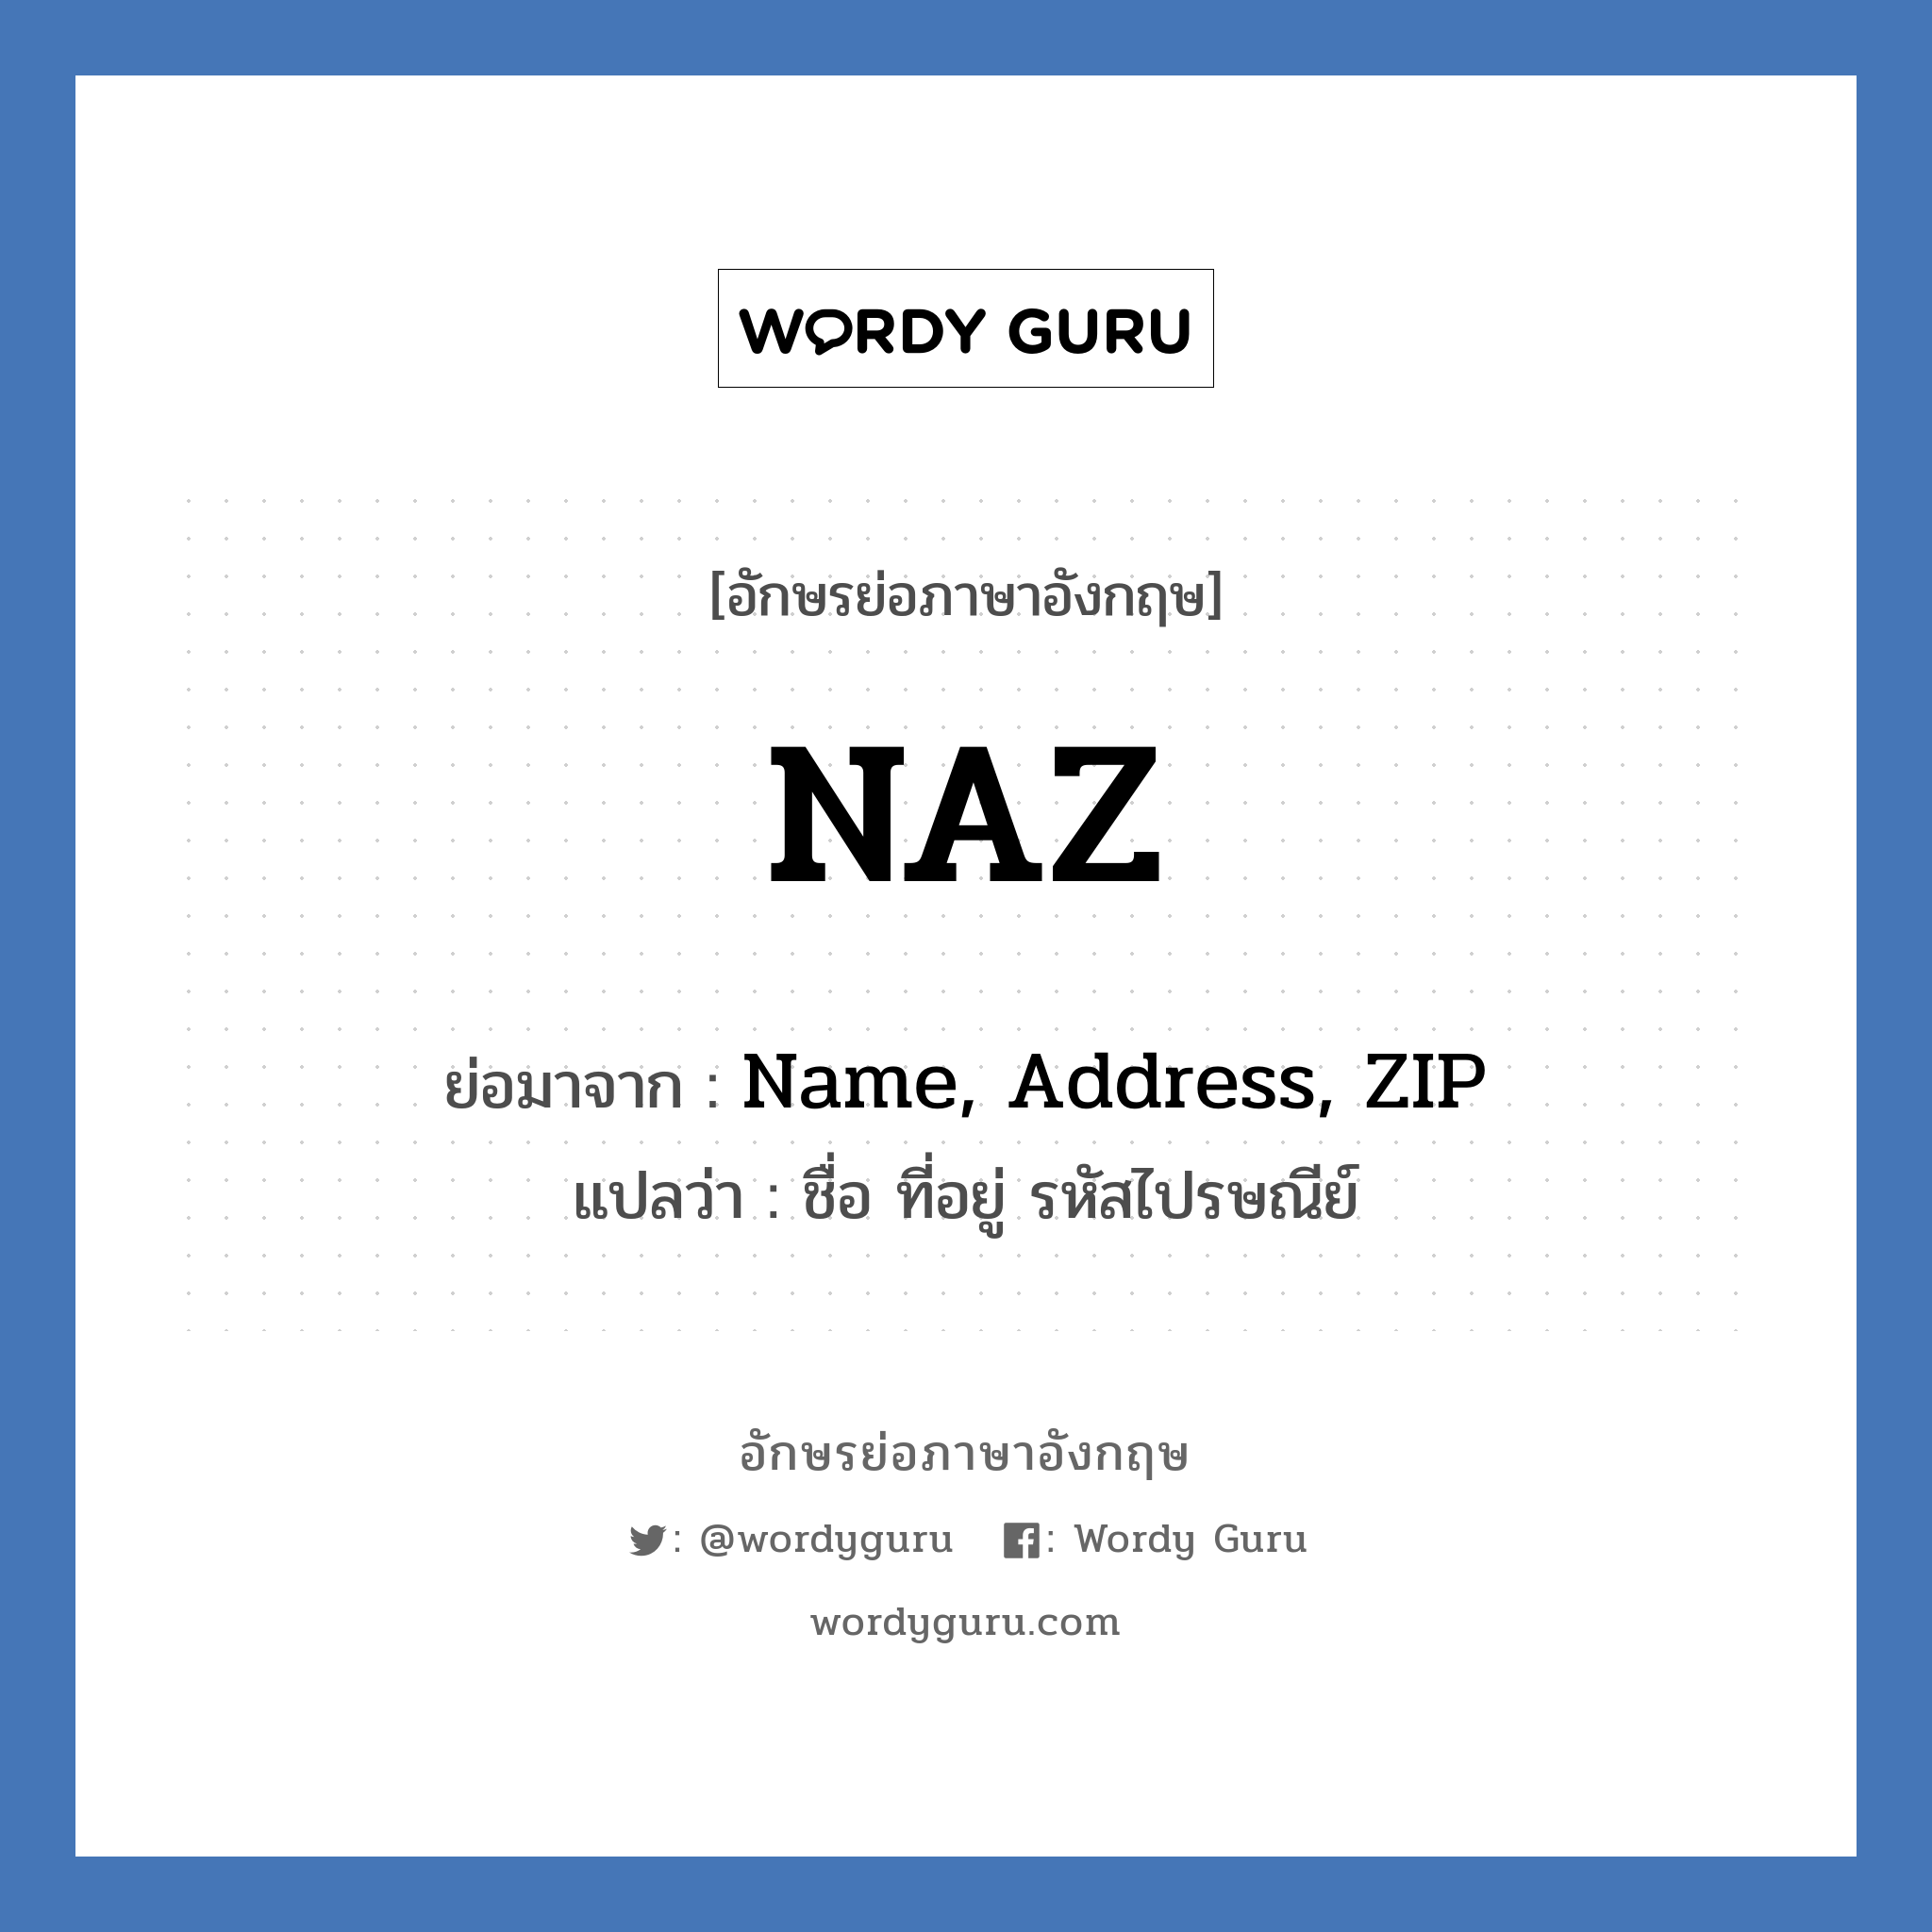 NAZ ย่อมาจาก? แปลว่า?, อักษรย่อภาษาอังกฤษ NAZ ย่อมาจาก Name, Address, ZIP แปลว่า ชื่อ ที่อยู่ รหัสไปรษณีย์